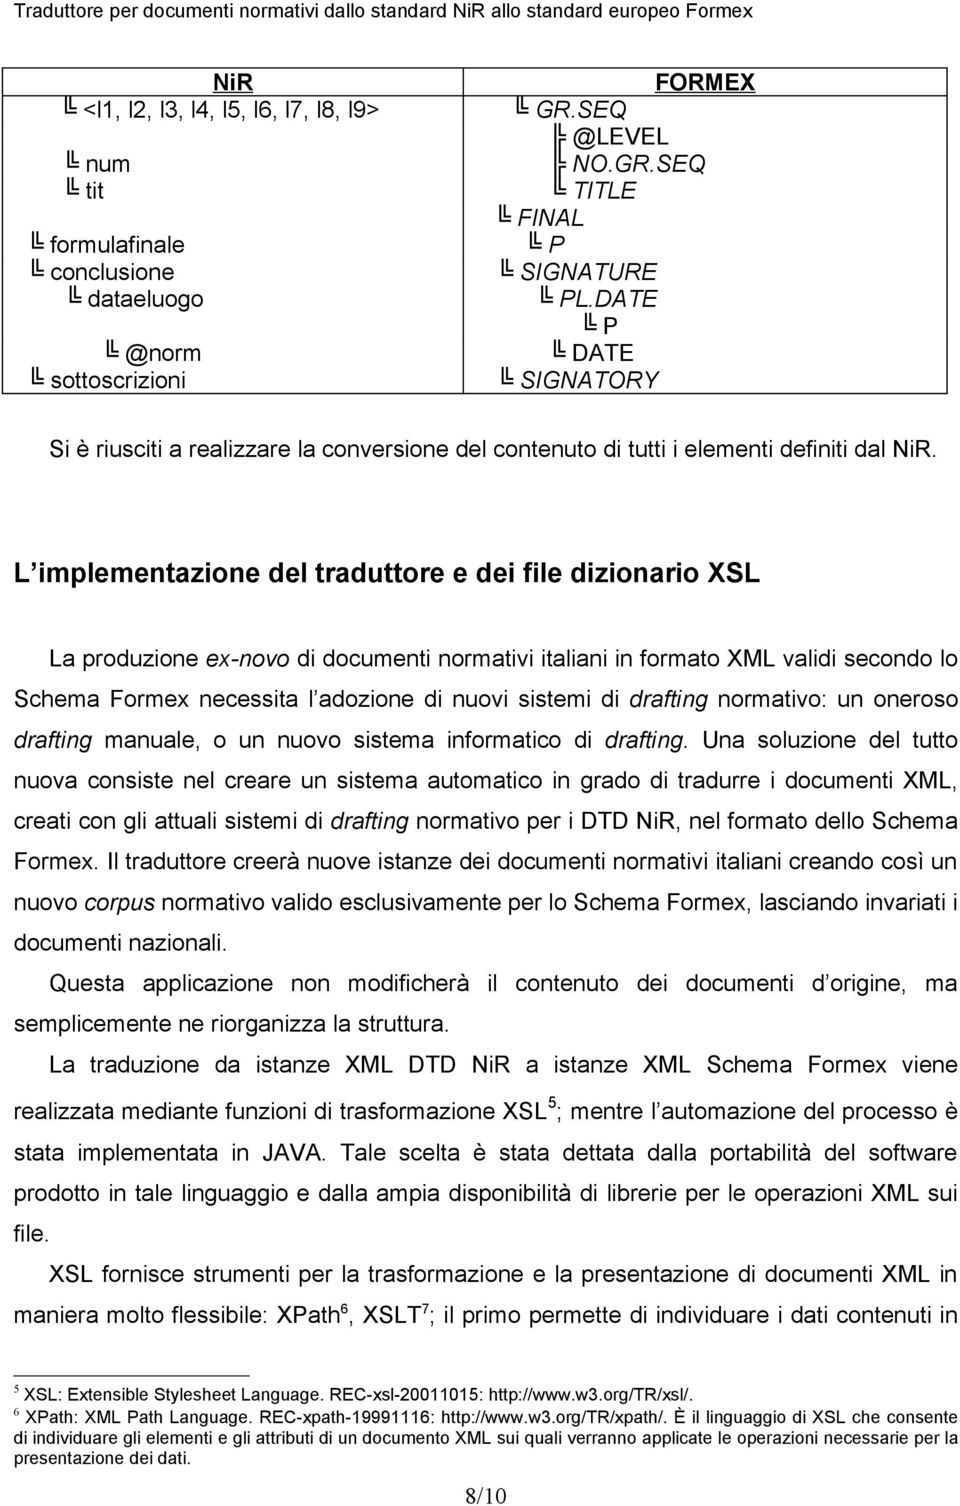 L implementazione del traduttore e dei file dizionario XSL La produzione ex-novo di documenti normativi italiani in formato XML validi secondo lo Schema Formex necessita l adozione di nuovi sistemi